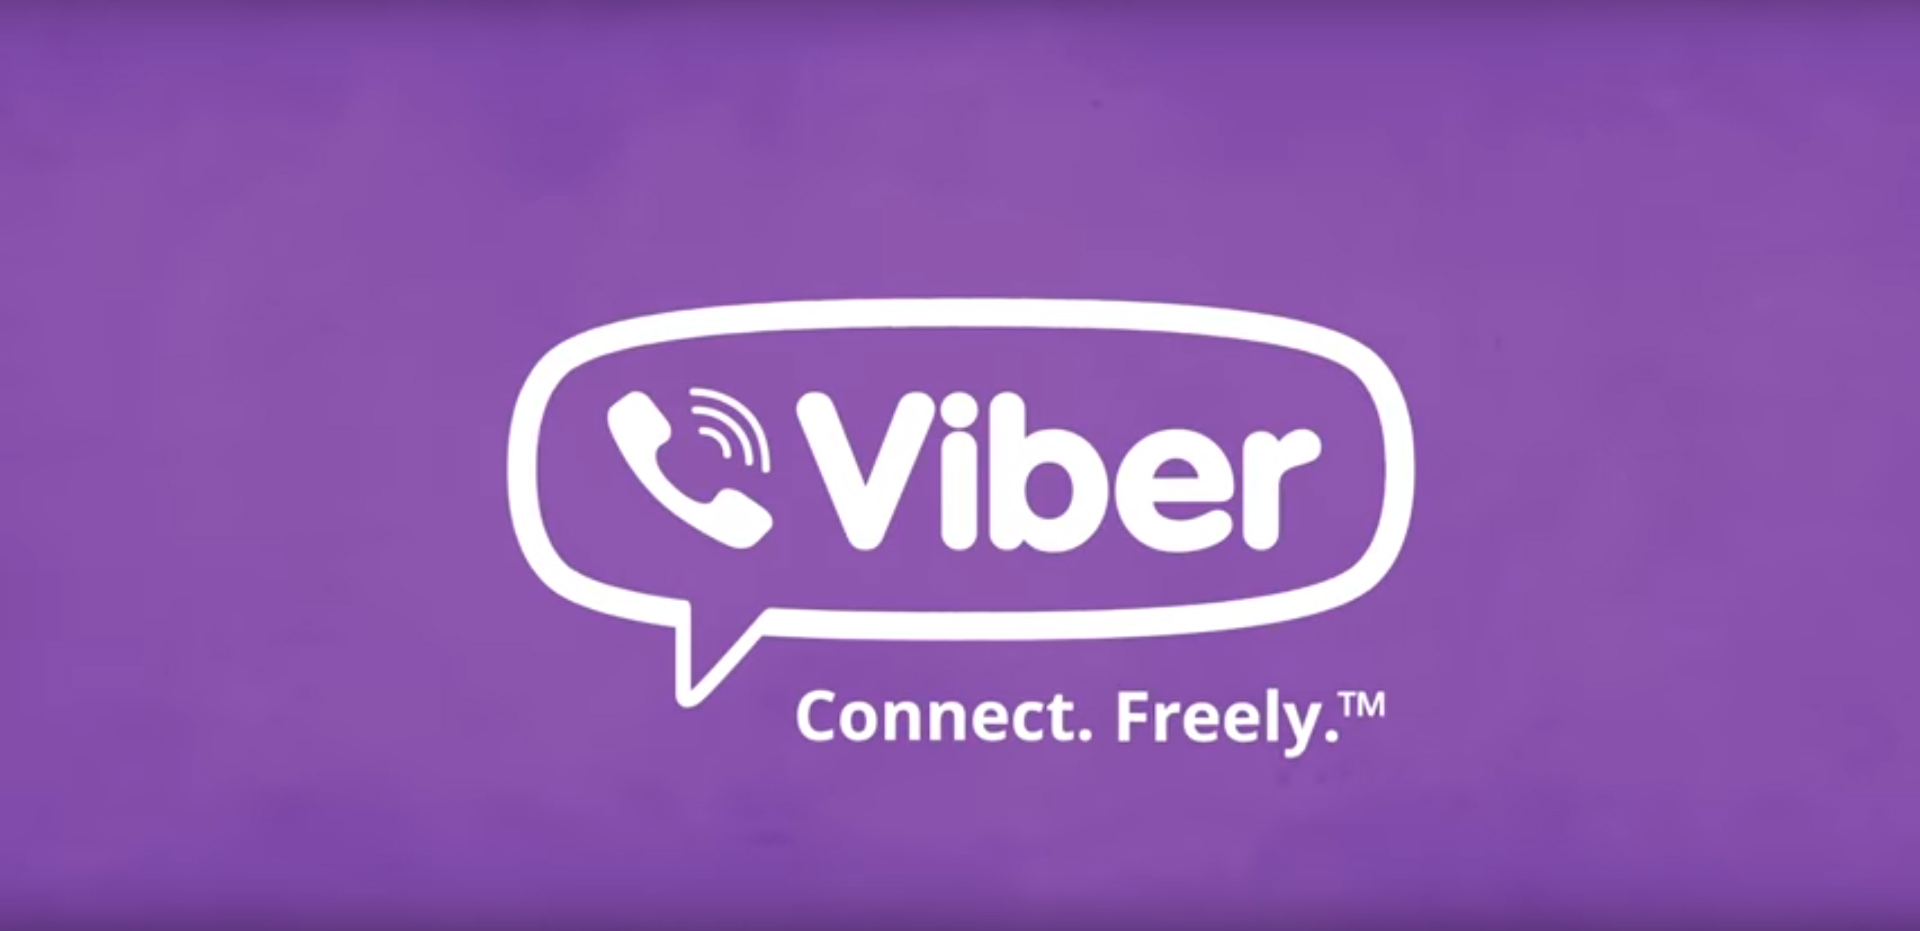 Megjelent az új Viber kliens Windows 10-re és Windows 10 Mobile-ra